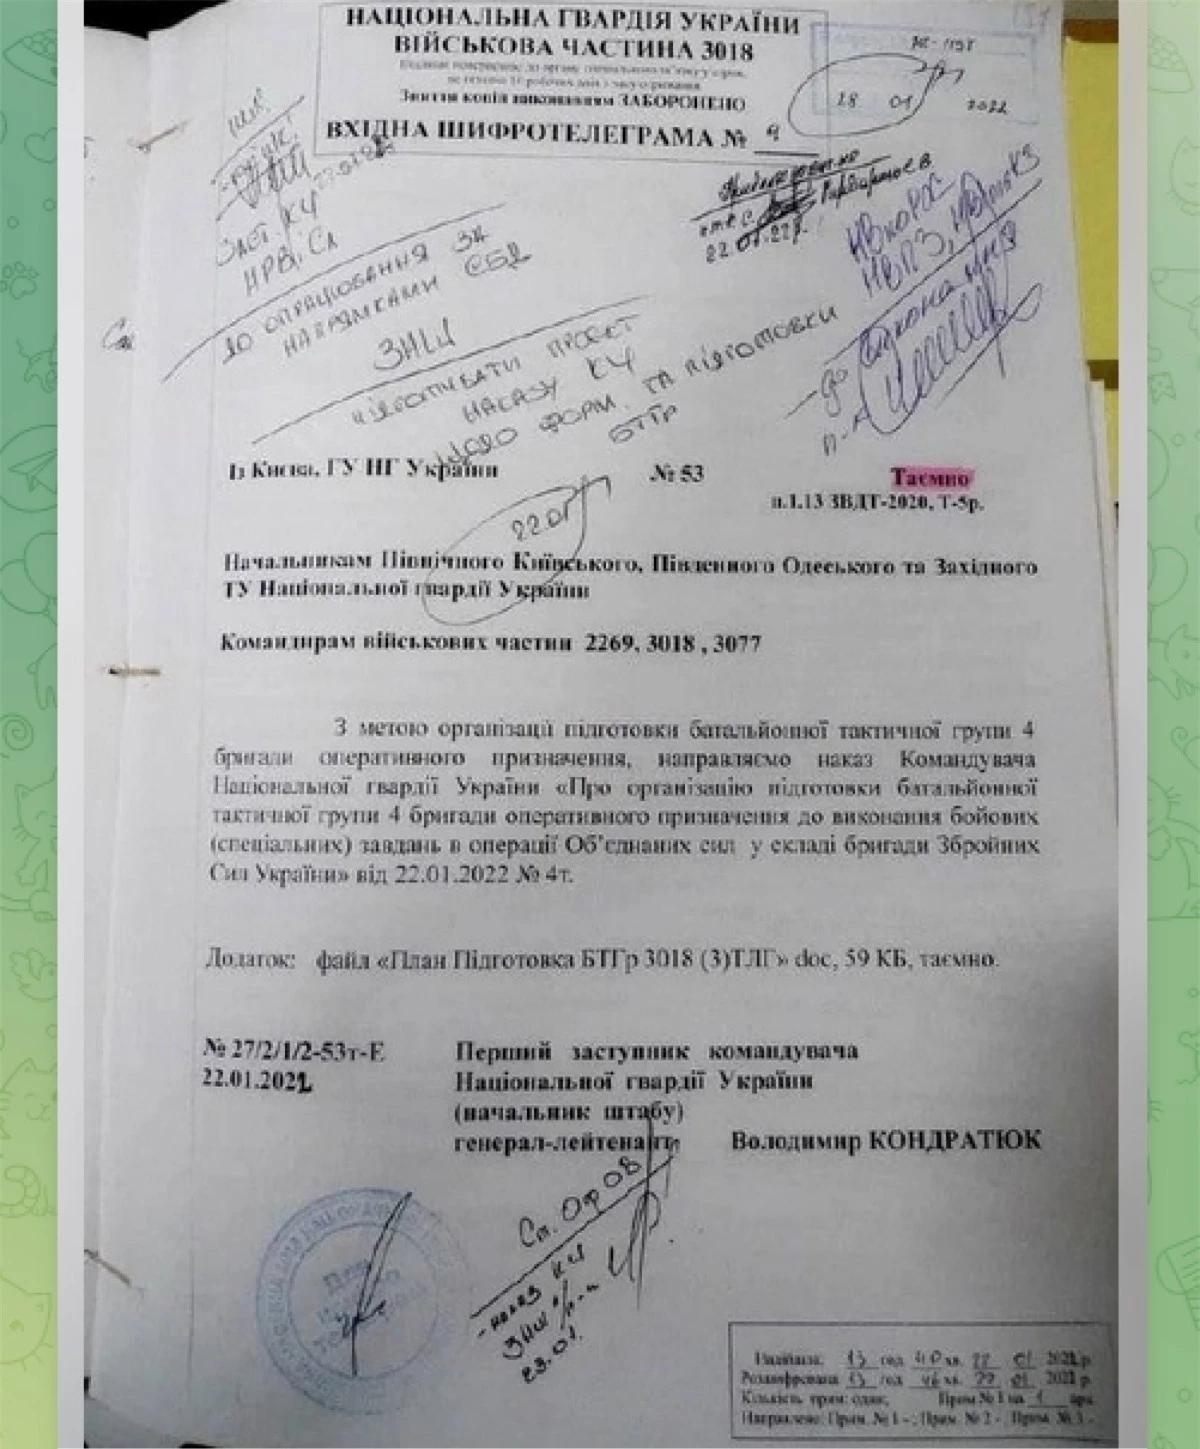 Tài liệu mật do Bộ Quốc phòng Nga công bố. Theo Bộ Quốc phòng Nga, đây là kế hoạch Ukraine tấn công Donbass. Nguồn: Bộ Quốc phòng Nga.